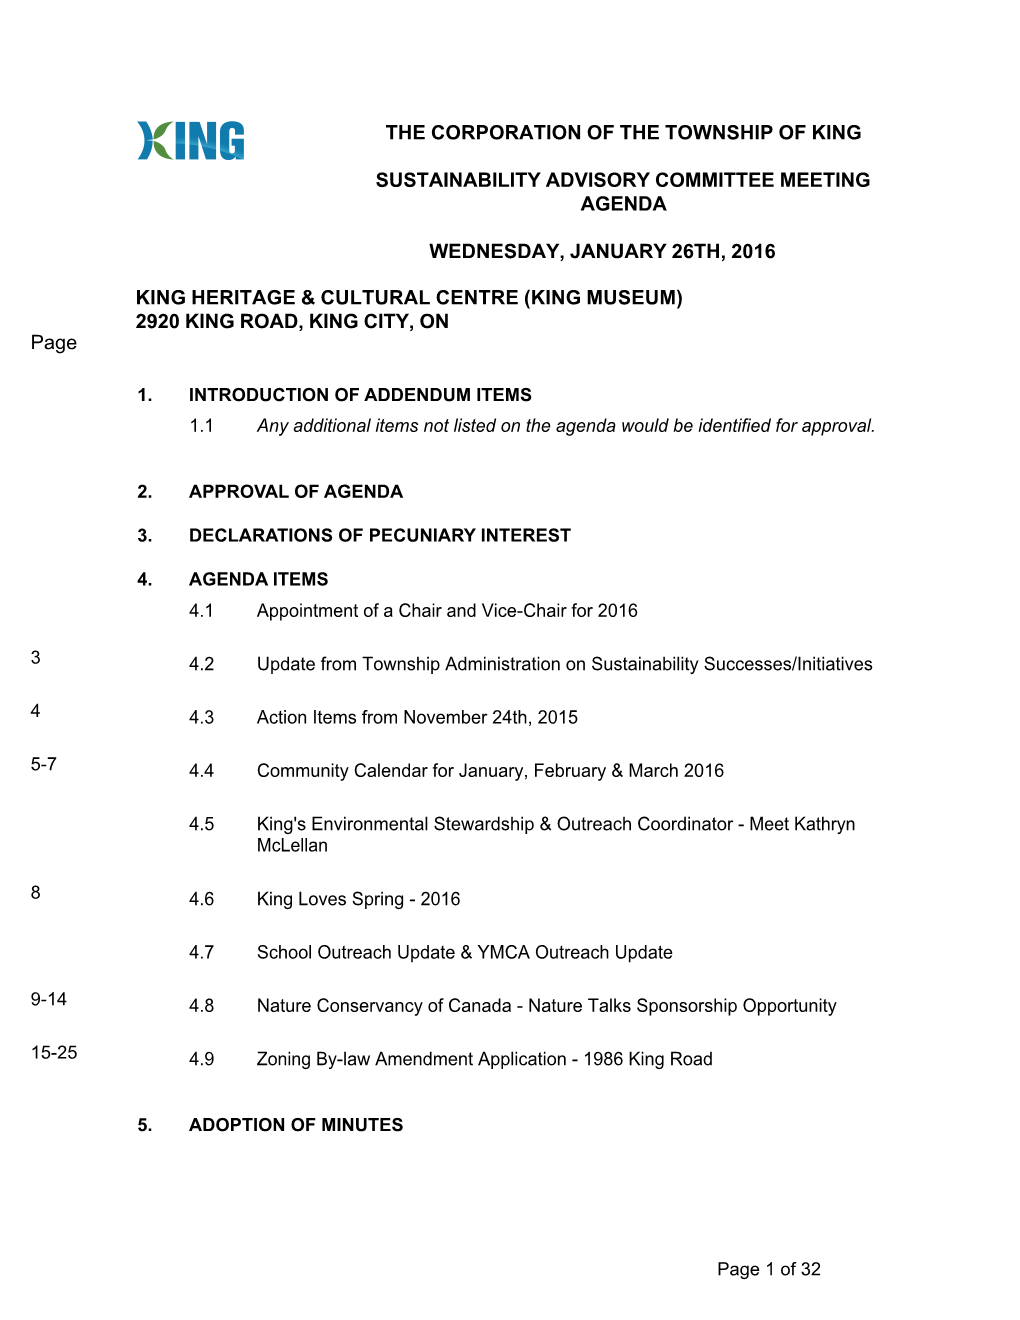 Sustainability Advisory Committee Meeting Agenda